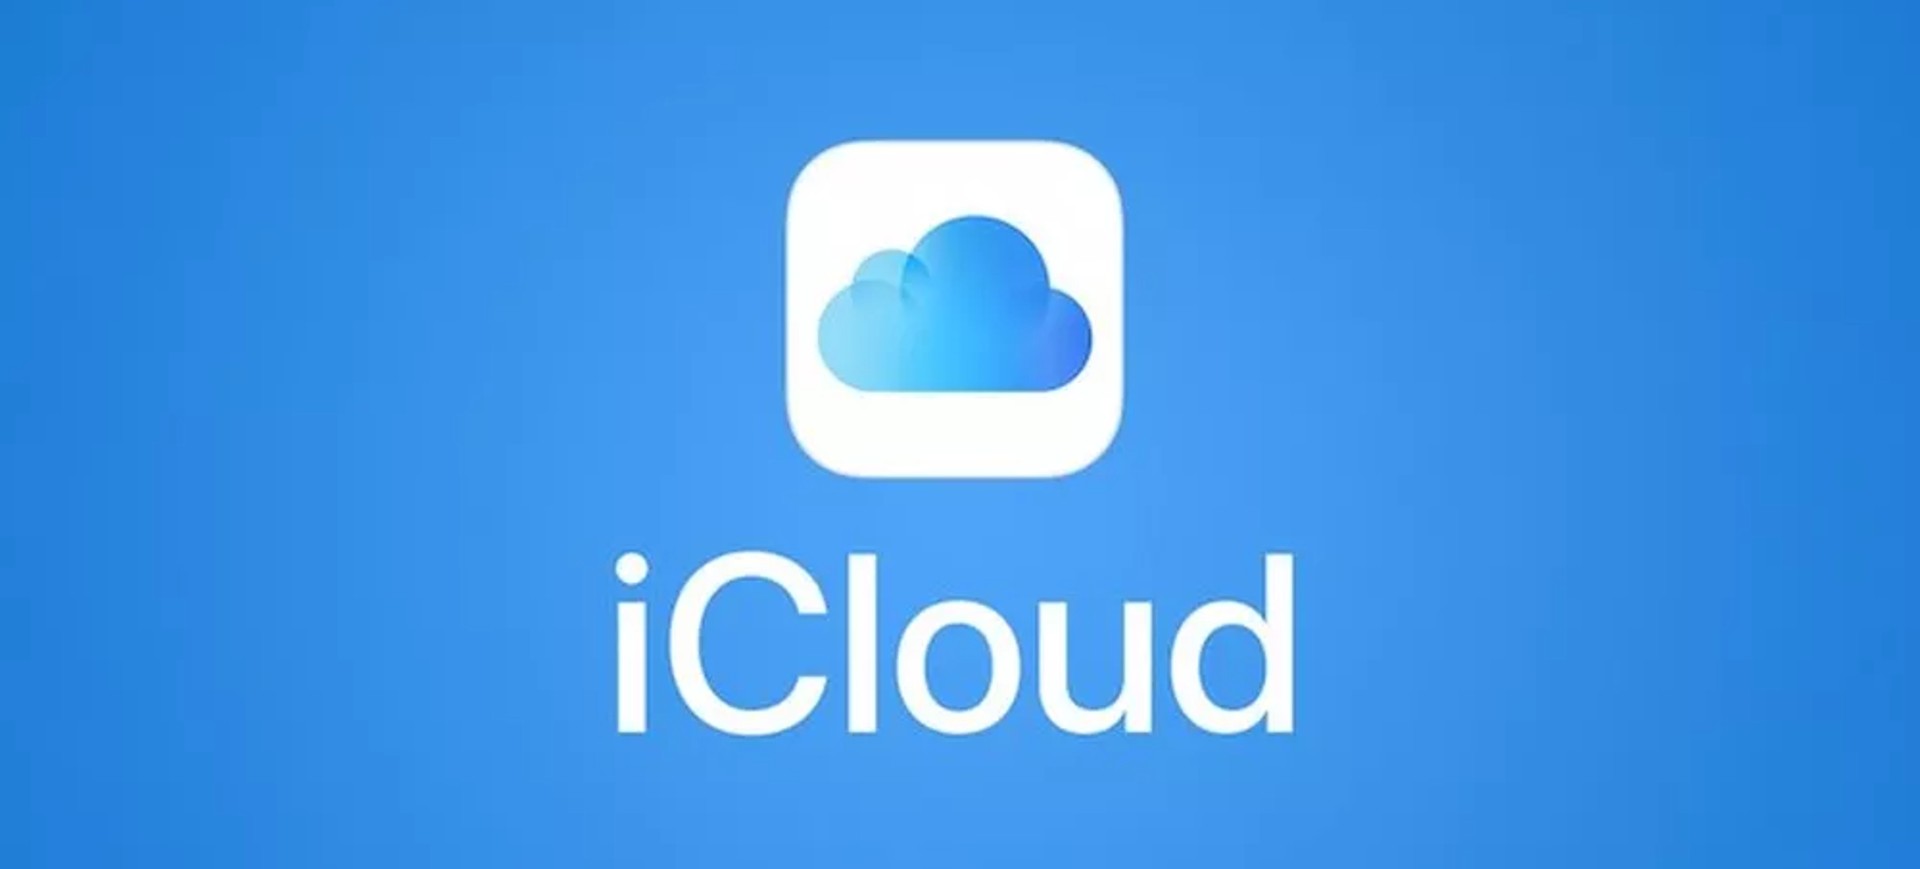 logo do serviço de armazenamento em nuvem da Apple, iCloud